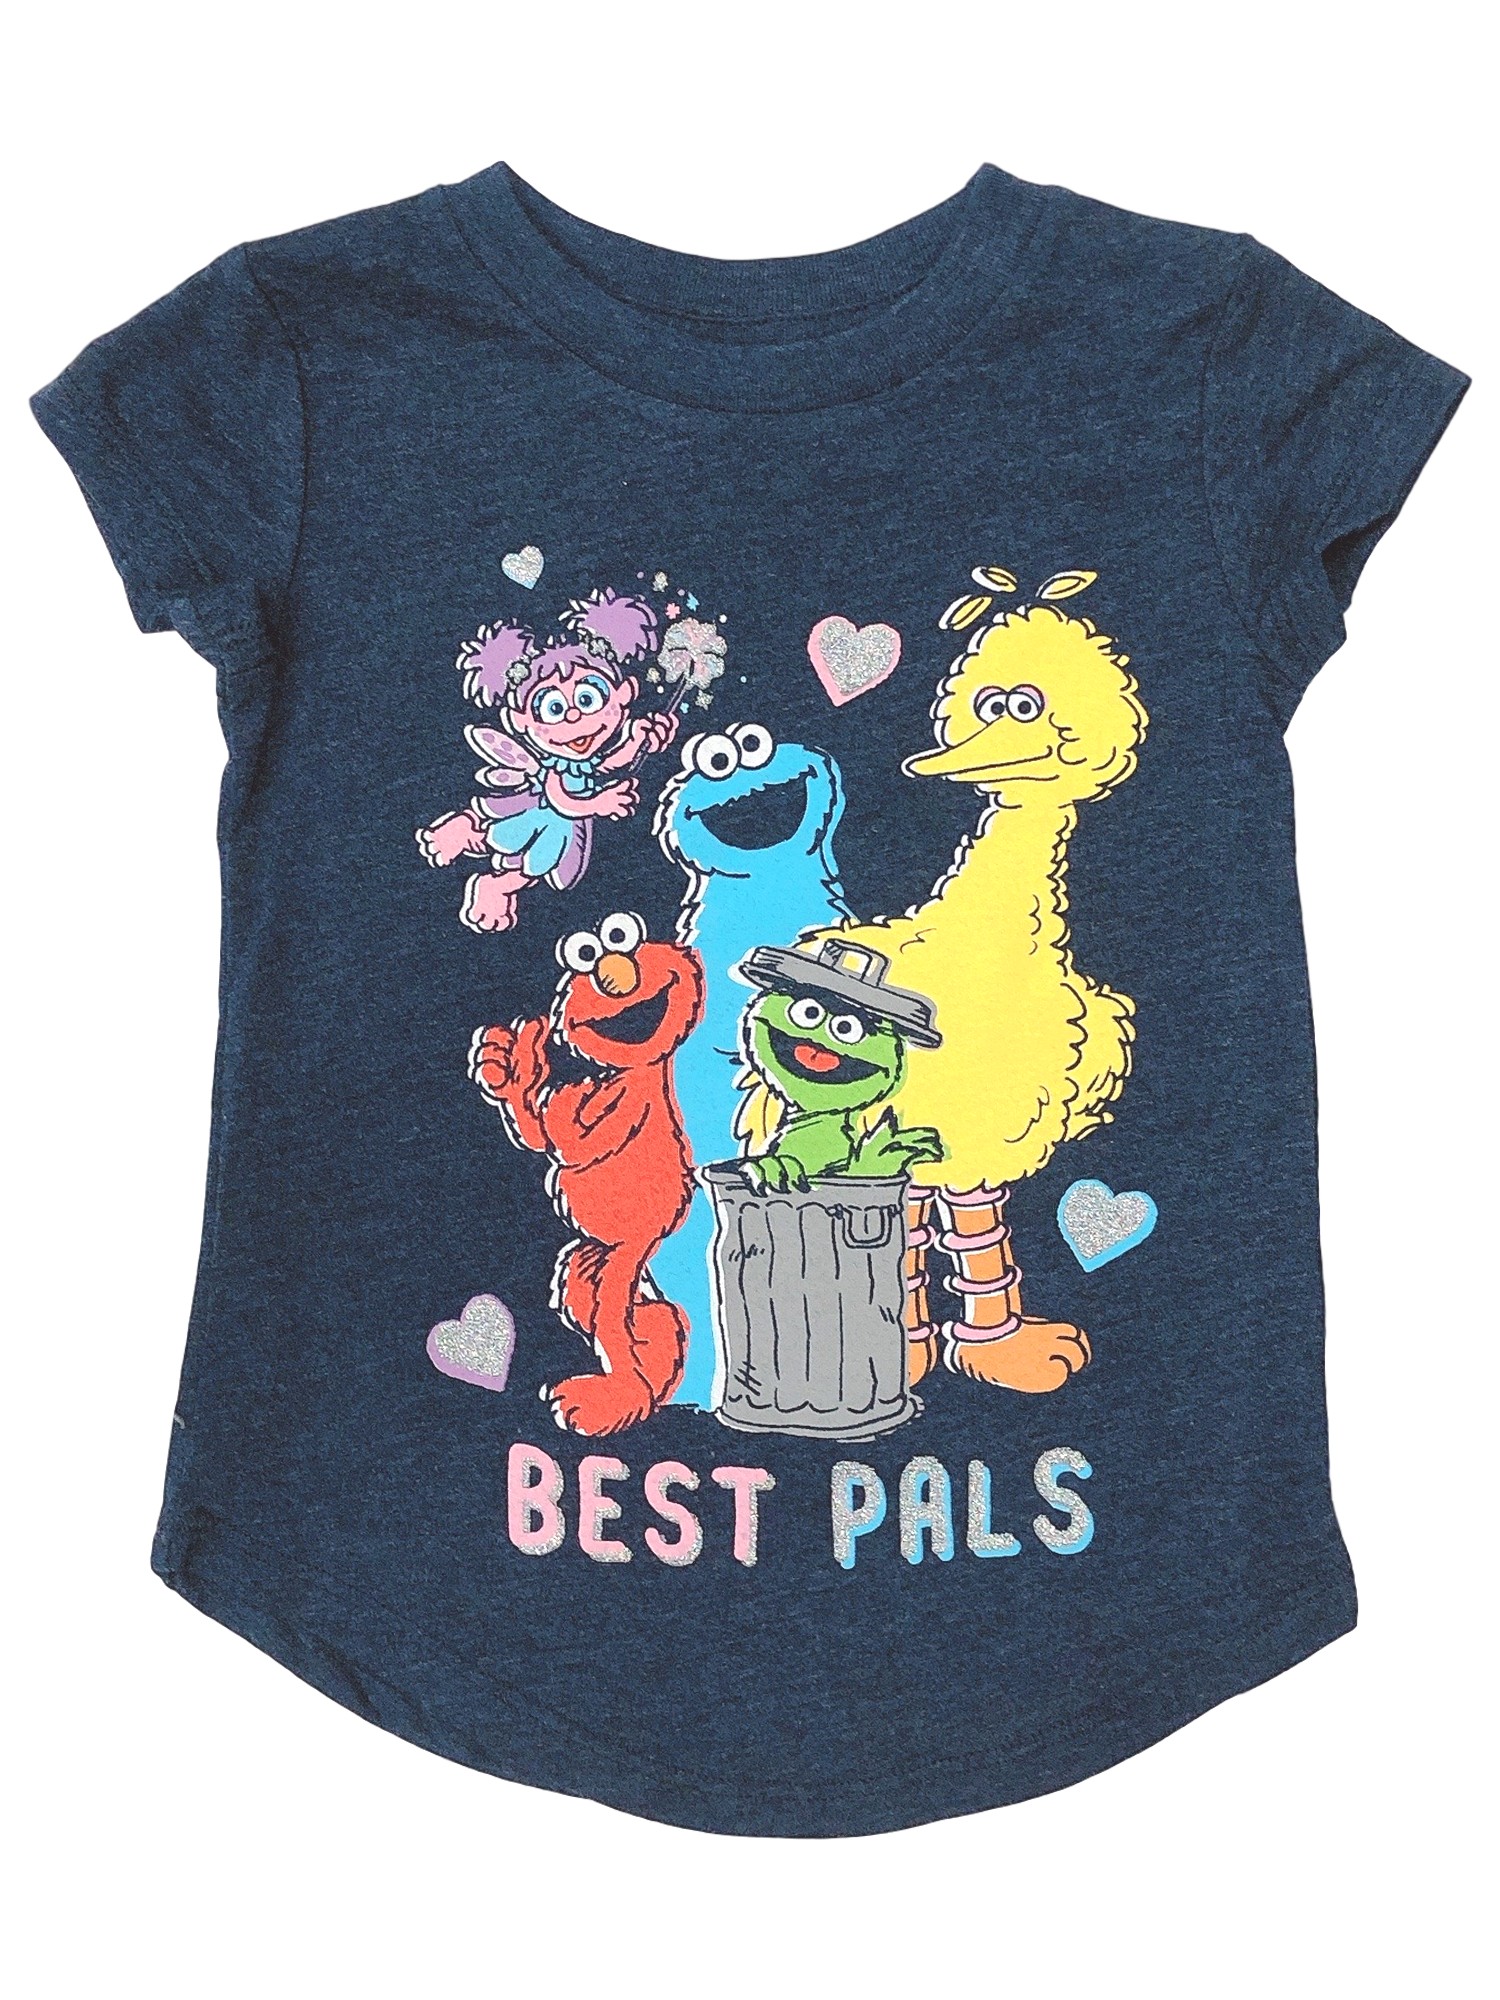 Jumping Beans Toddler Girls Blue Sparkle Best Pals Elmo Big Bird Tee Shirt